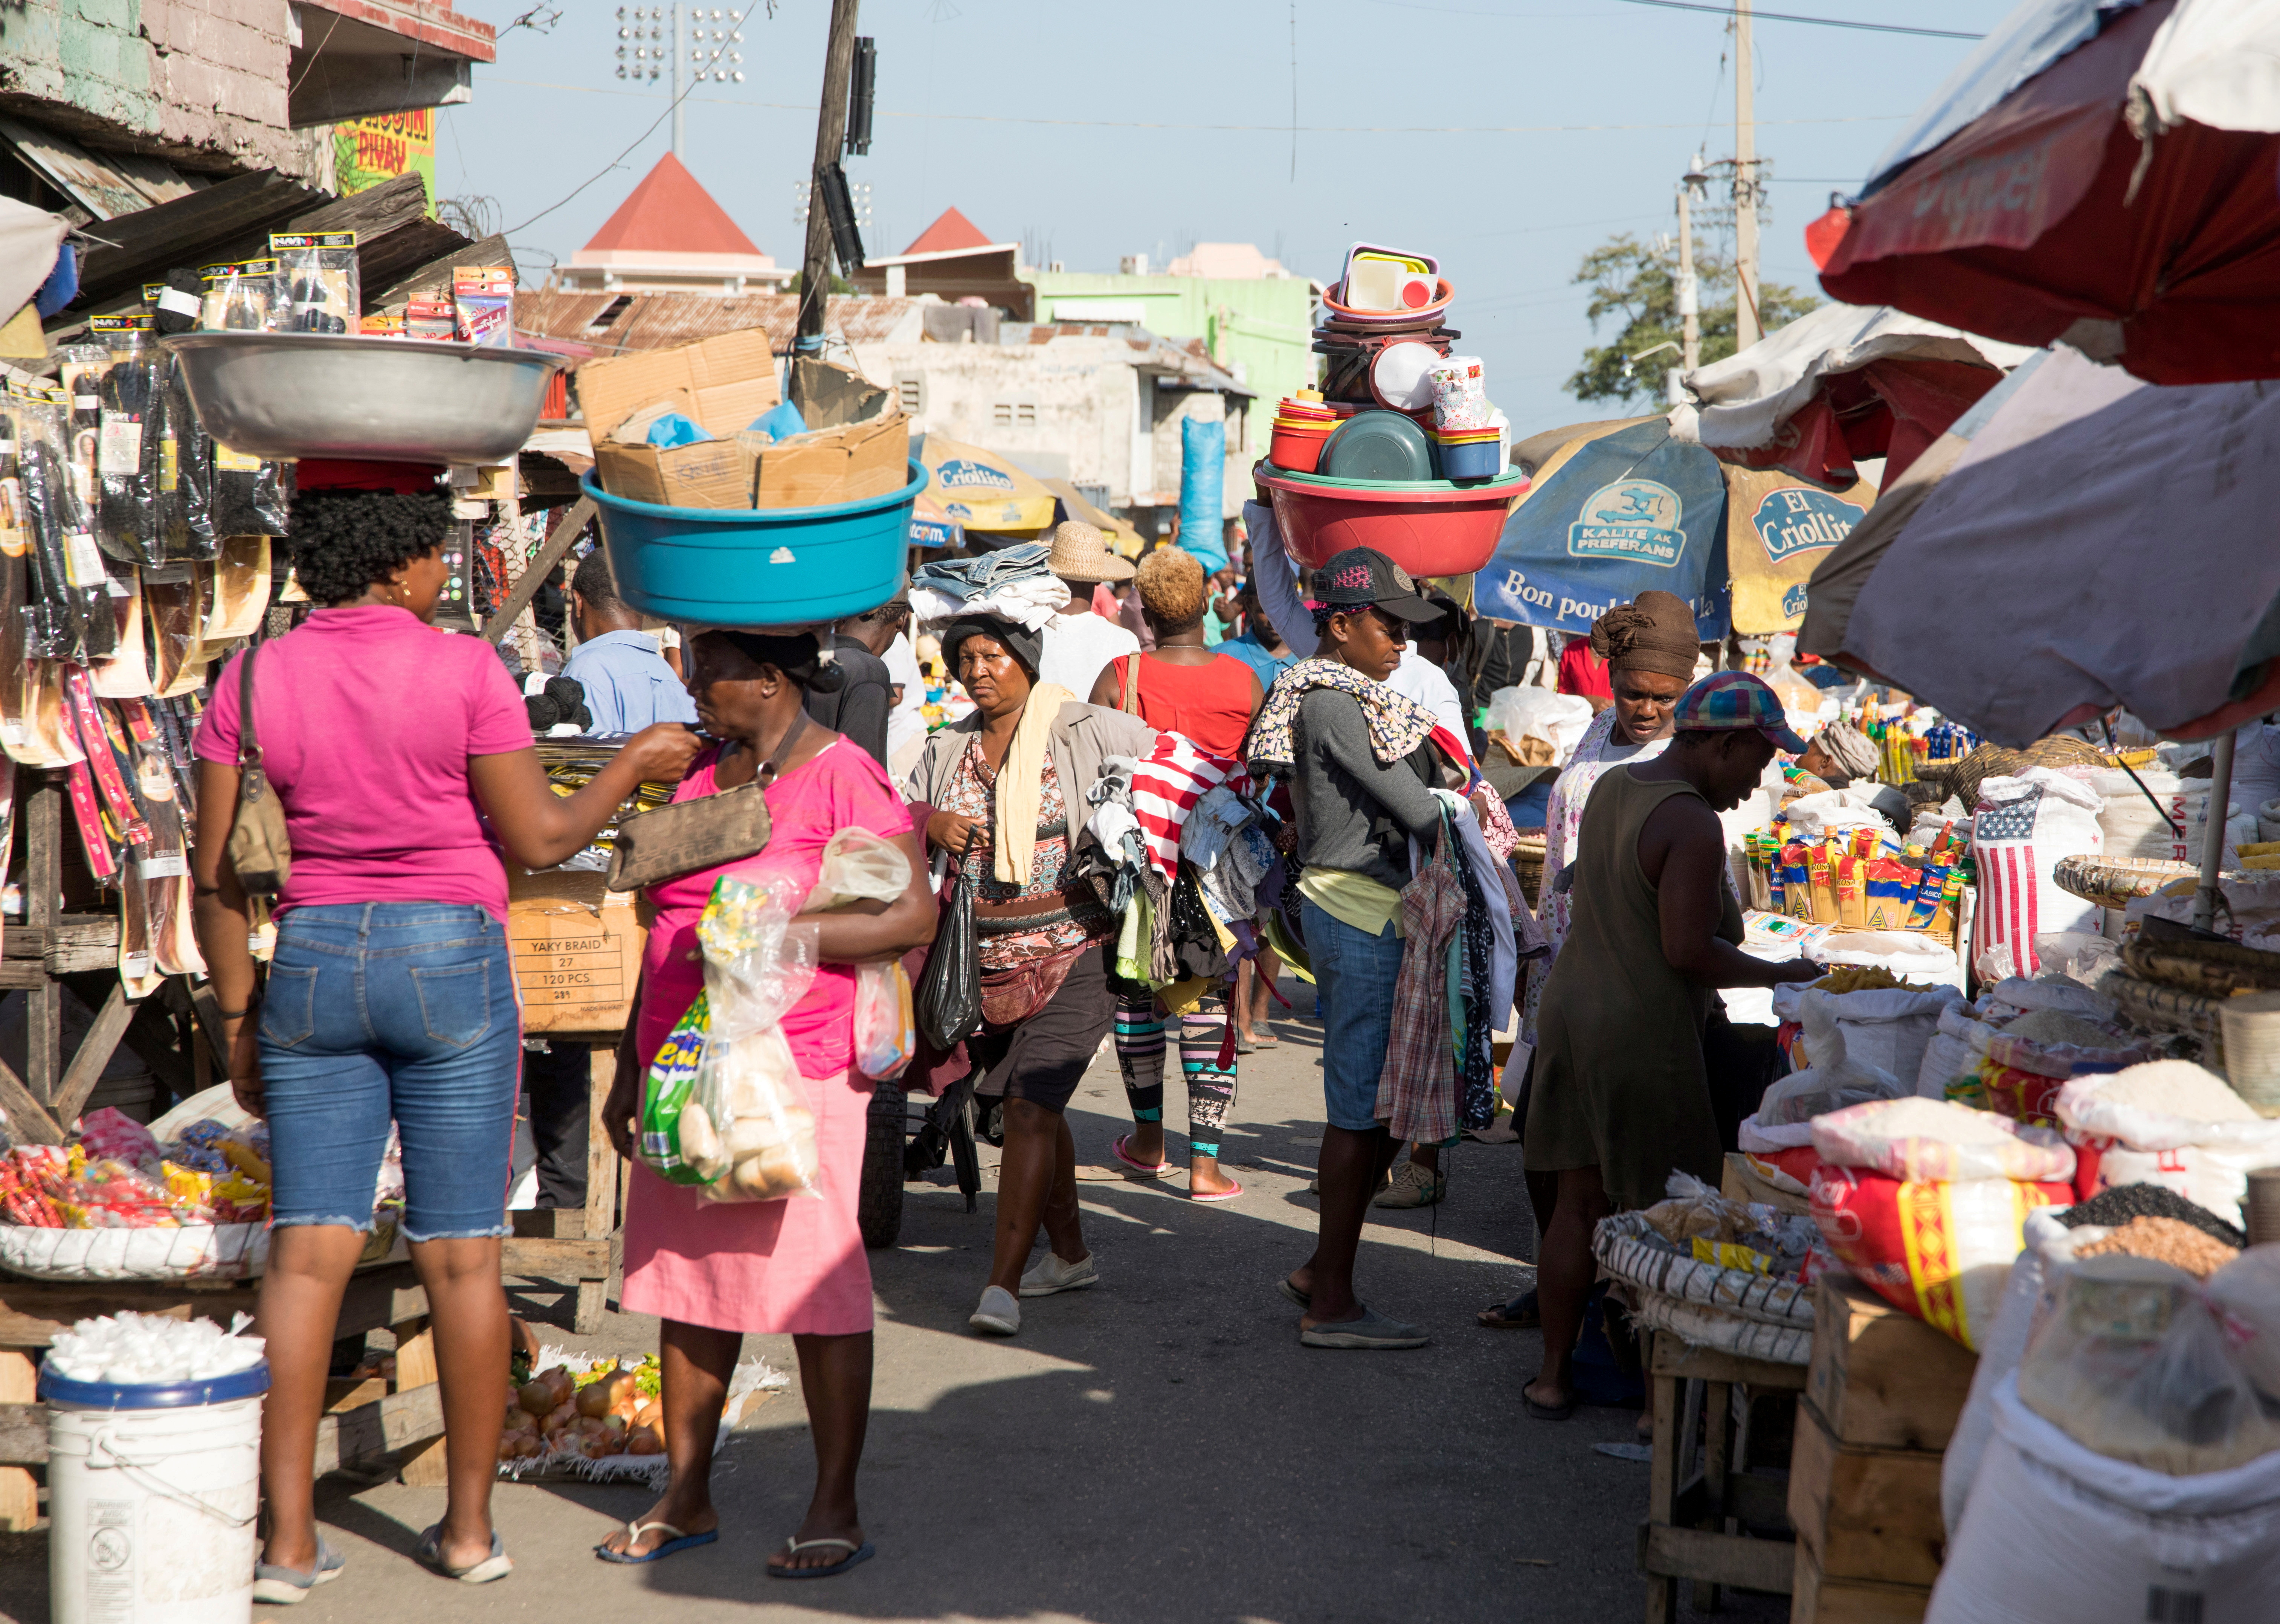 La gente camina en un mercado en Puerto Príncipe, el 24 de mayo de 2021 (REUTERS/Valerie Baeriswyl/File Photo)